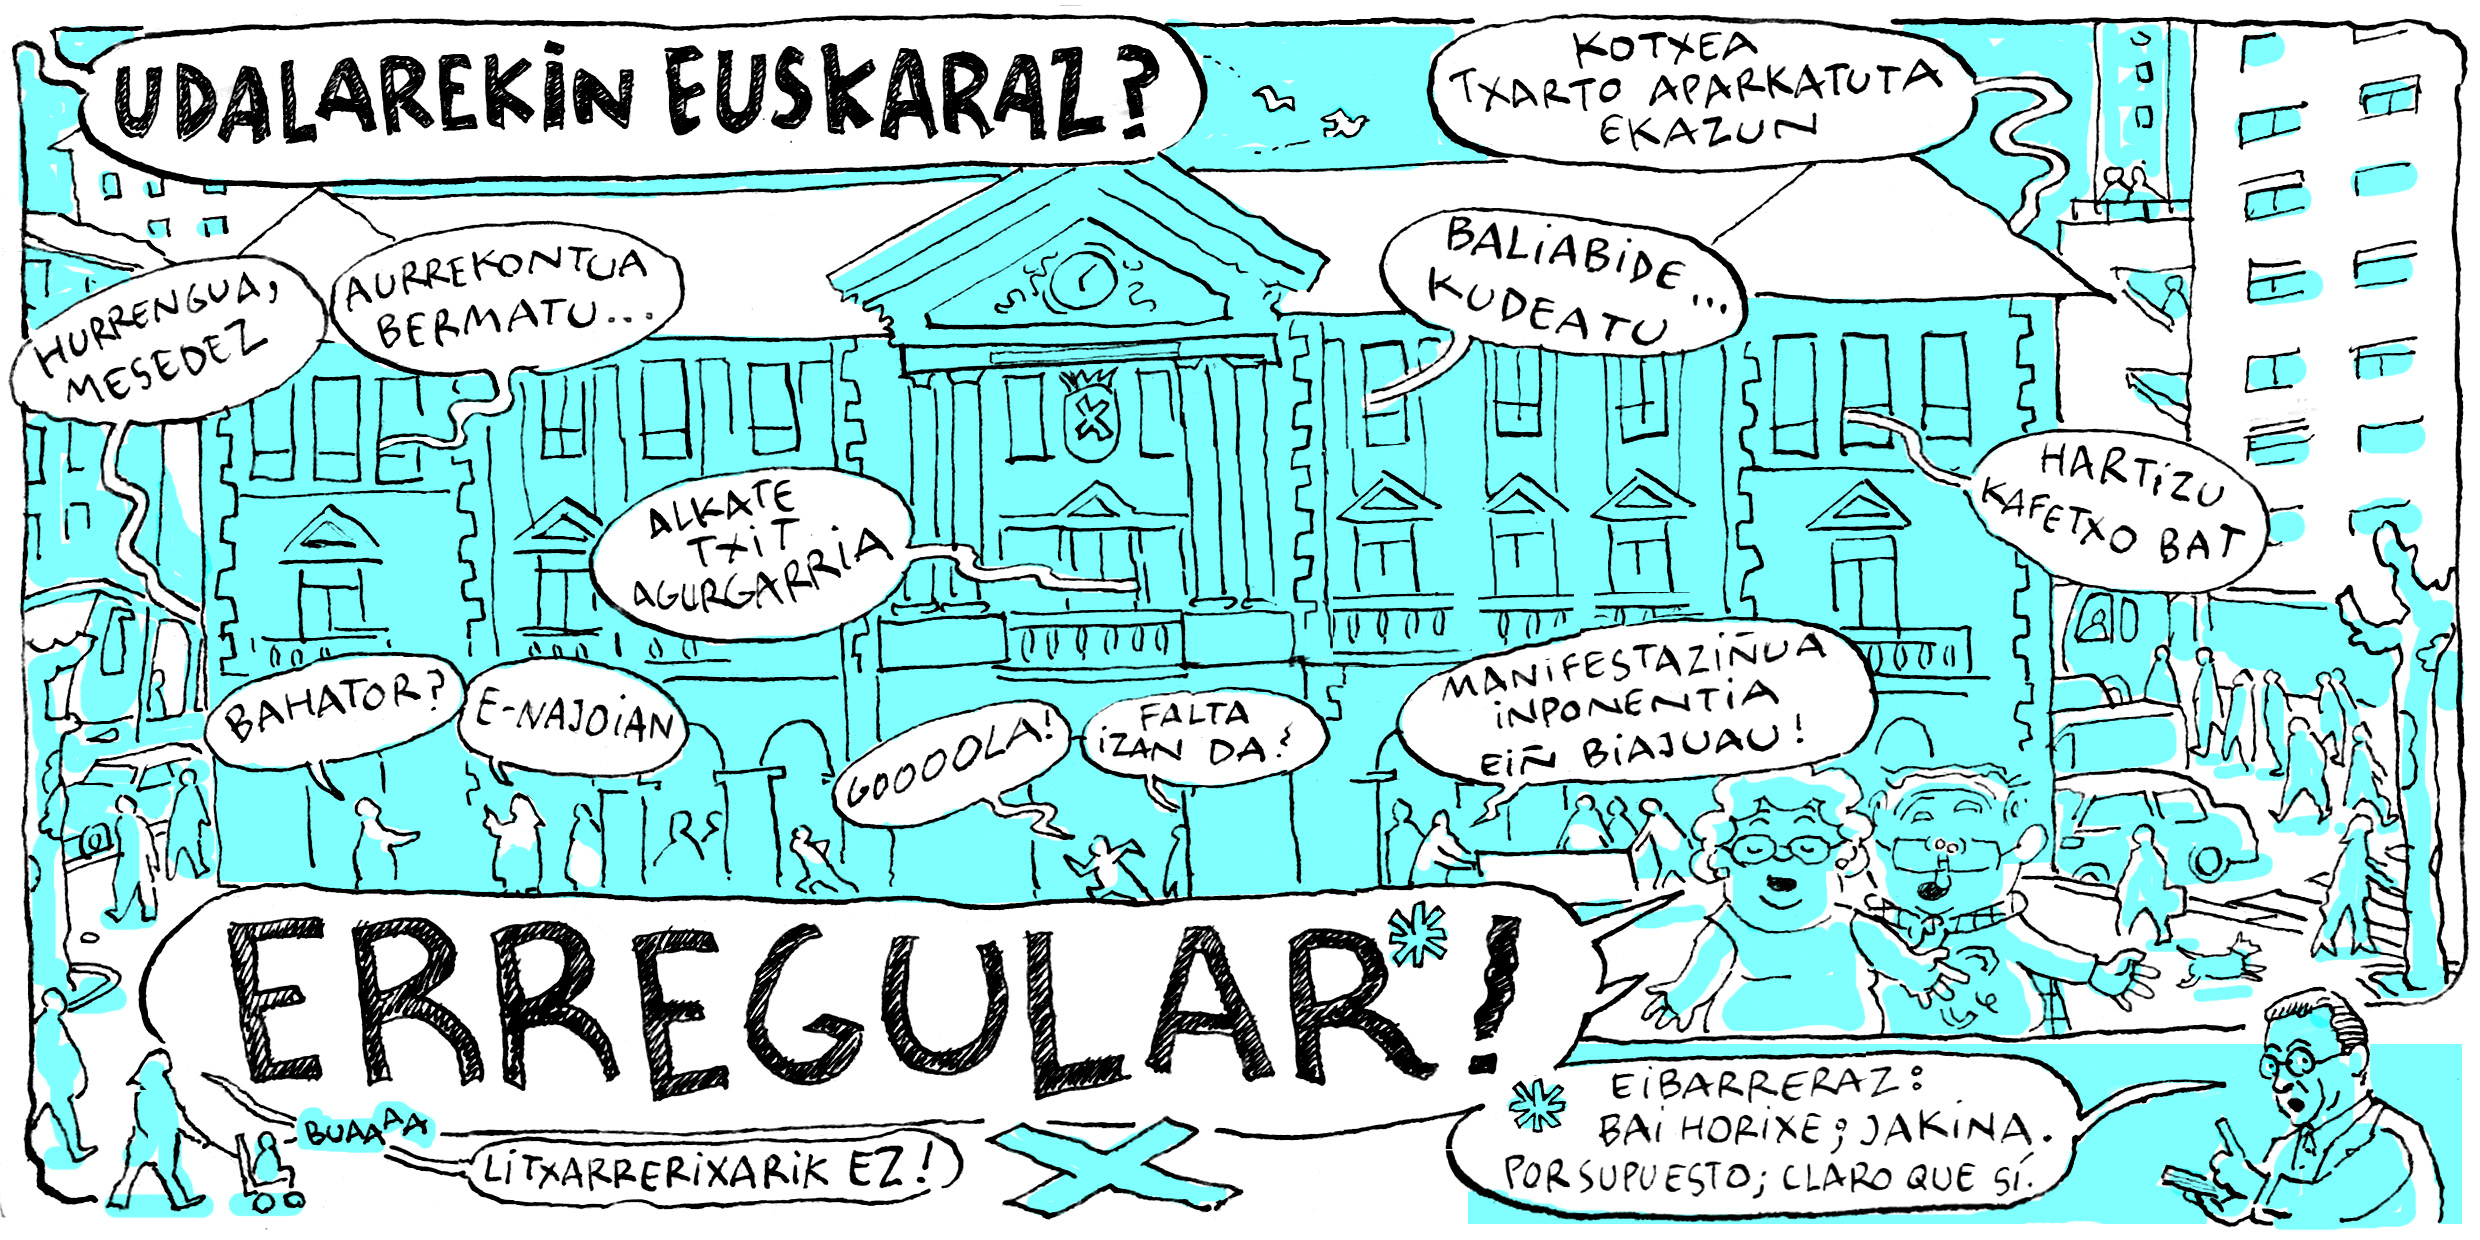 El Ayuntamiento de Eibar dirige ahora la campaña "¿En euskera con el Ayuntamiento de Eibar? ¡Erregular!" a comerciantes y hosteleros